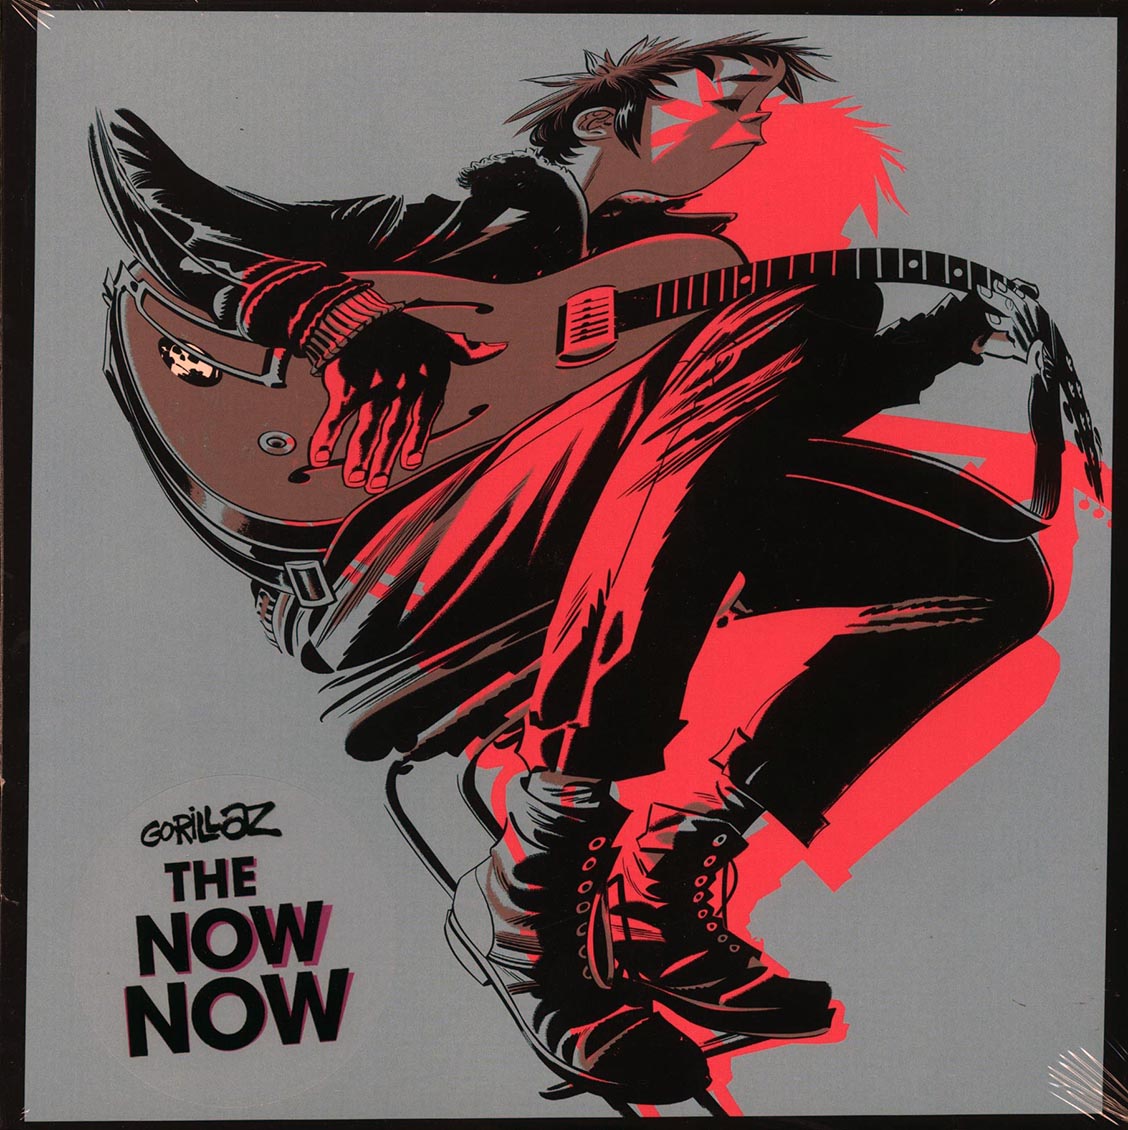 Gorillaz - The Now Now (incl. mp3) - Vinyl LP